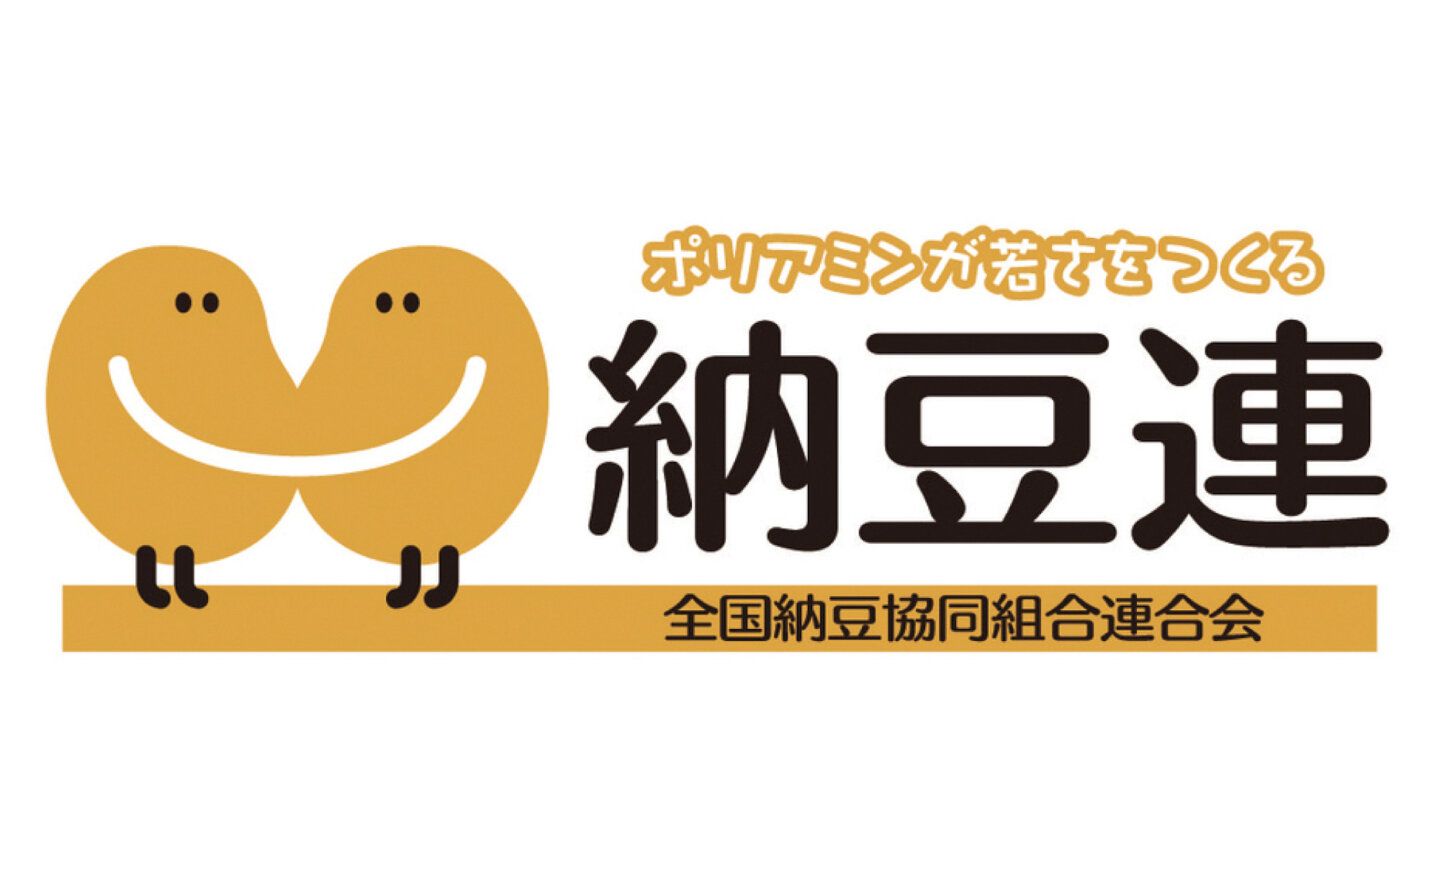 日本納豆協會「Natto Power」官網升級，分享納豆研究報告與漫畫